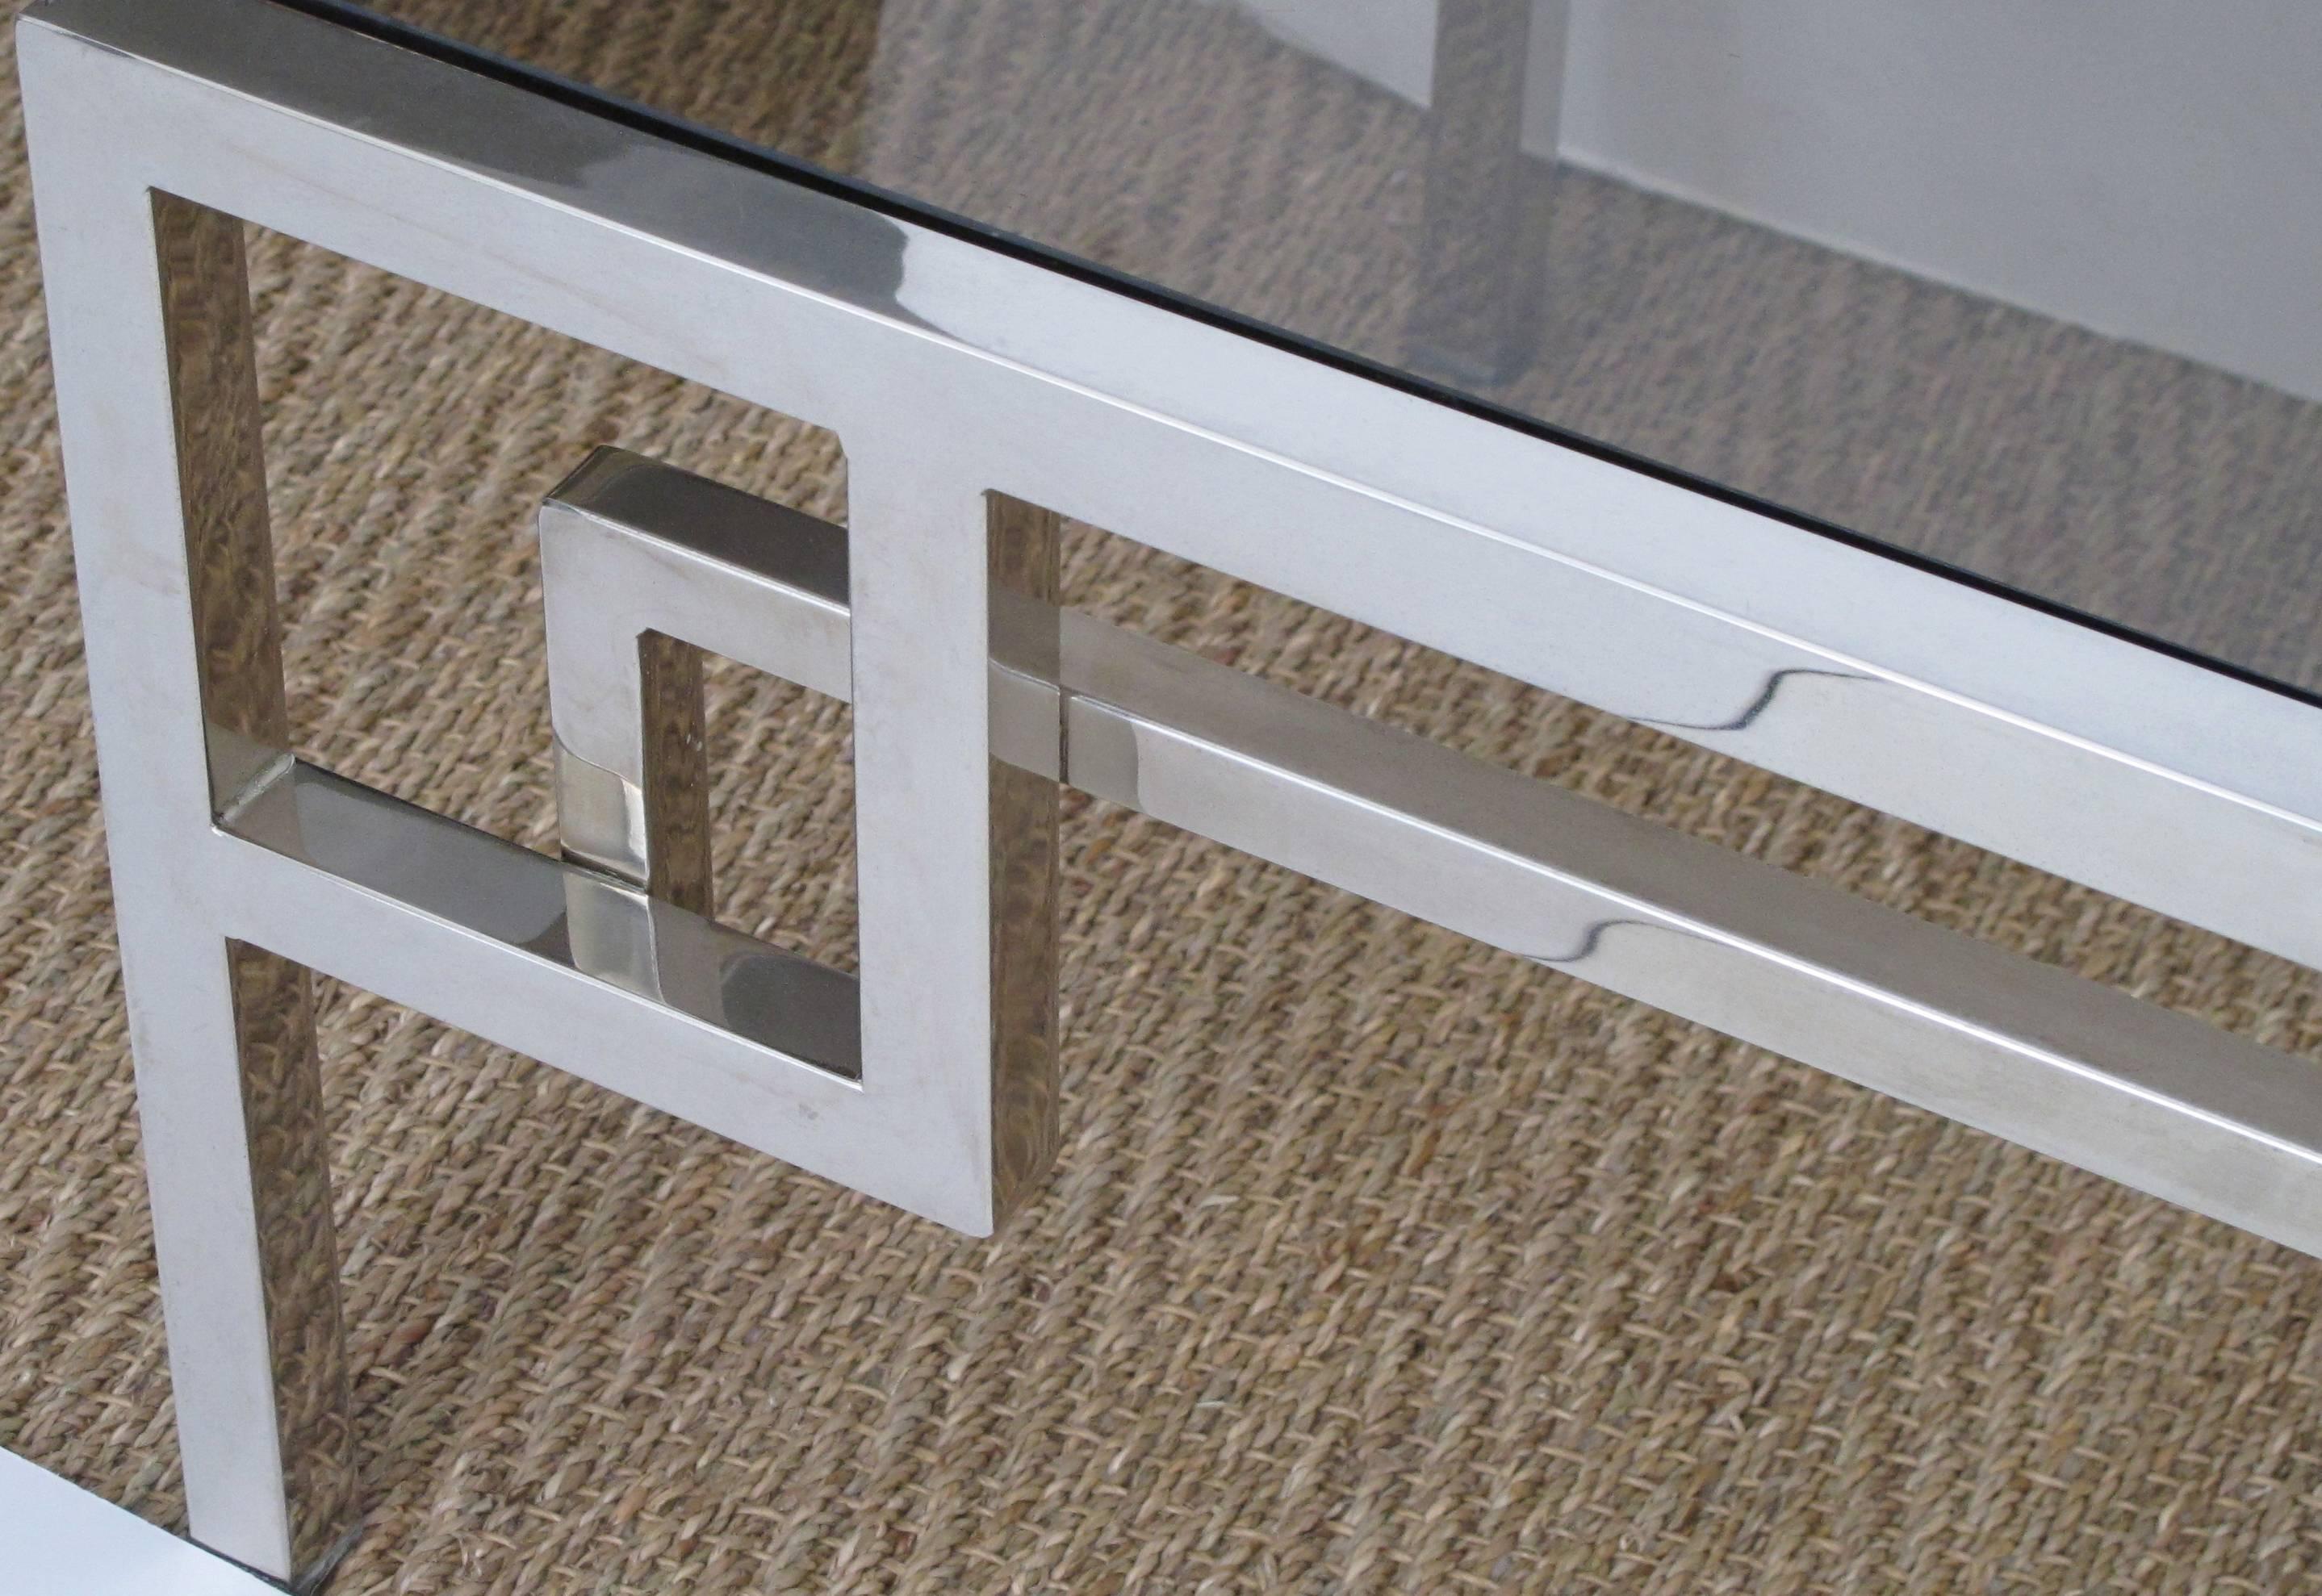 Table basse rectangulaire en chrome et verre des années 1970 ; le plateau en verre est inséré dans un cadre chromé avec un tablier géométrique ajouré.